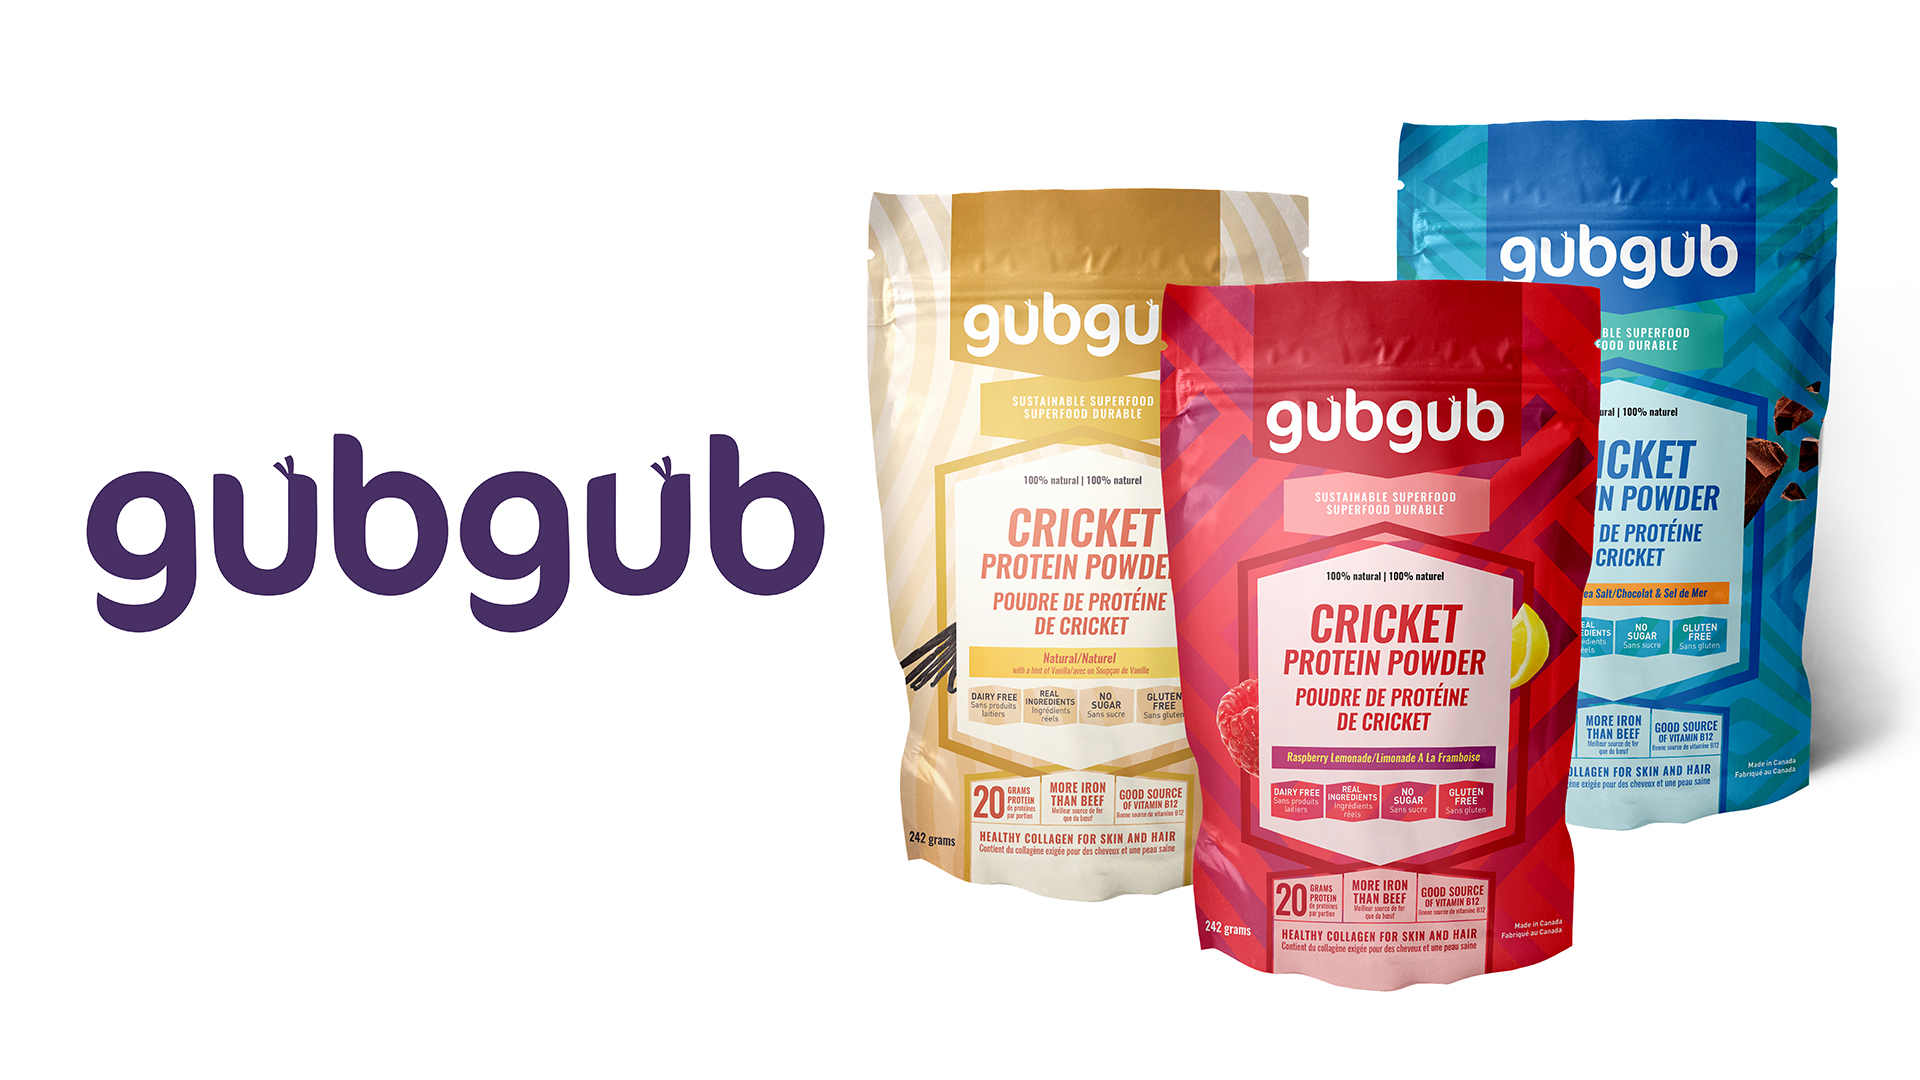 gubgub cricket protein powder